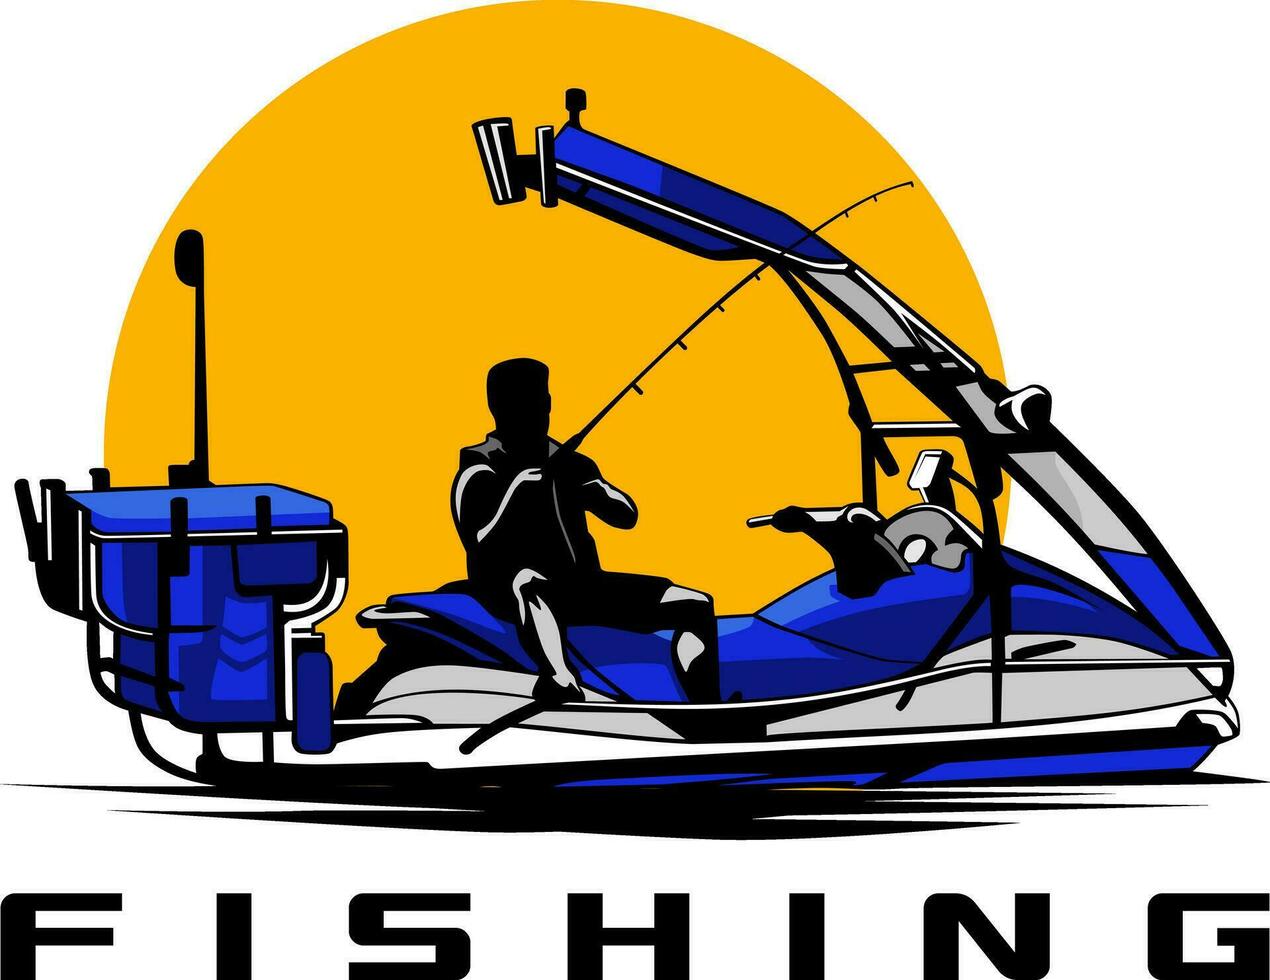 visvangst water sport- ontwerp logo illustratie vector